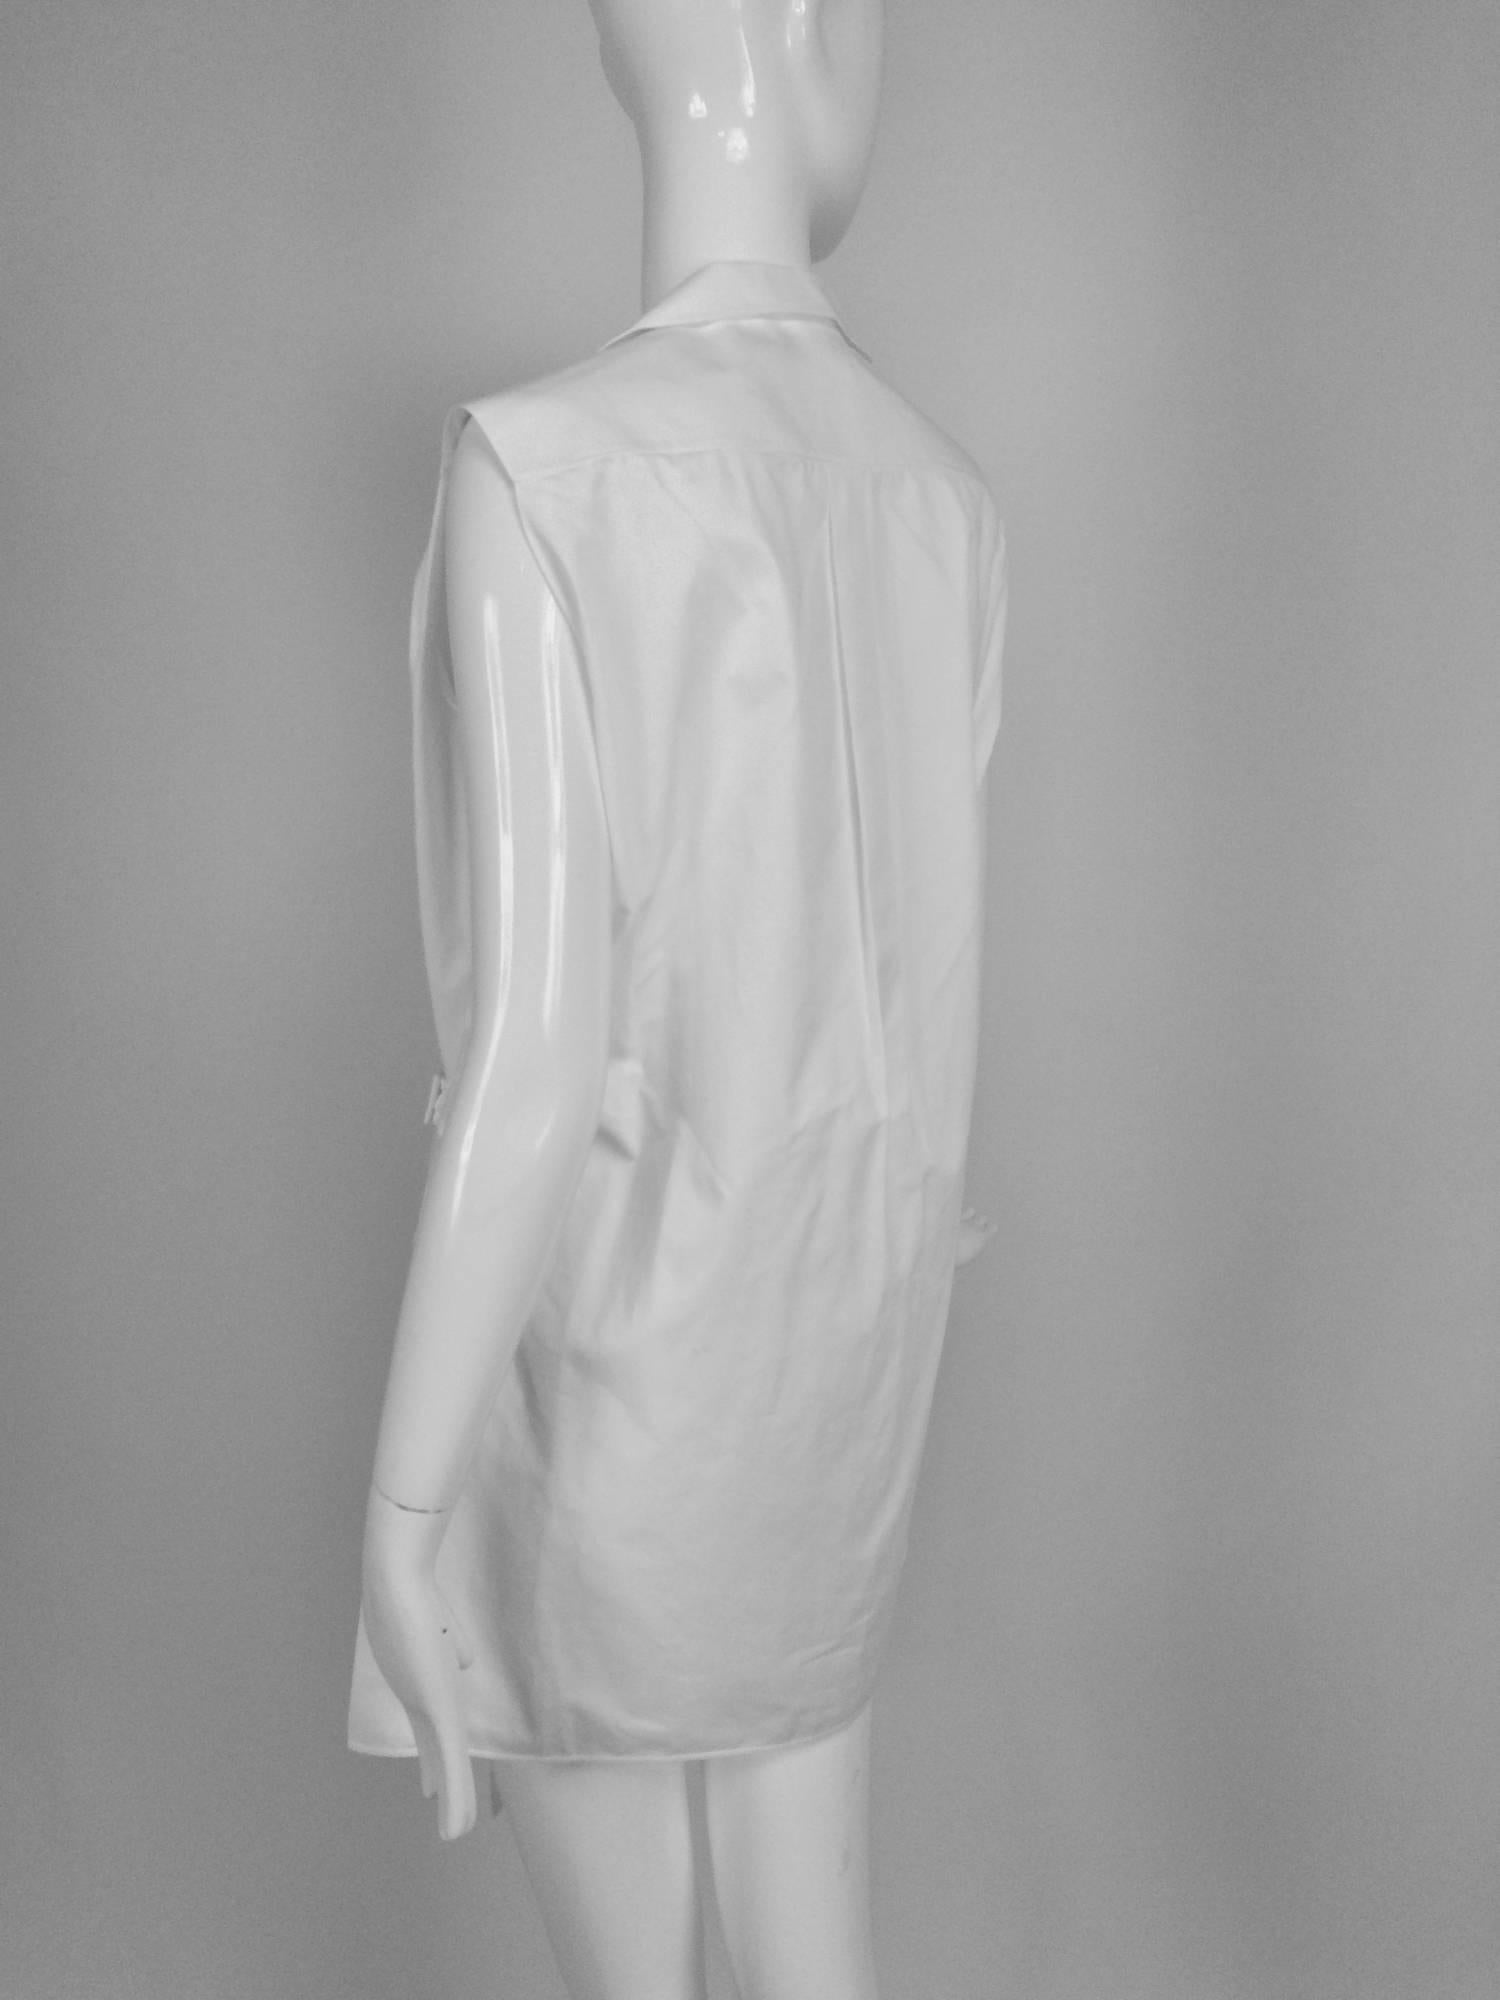 Gray Balenciaga sleeveless crisp white cotton pique belted tunic 38